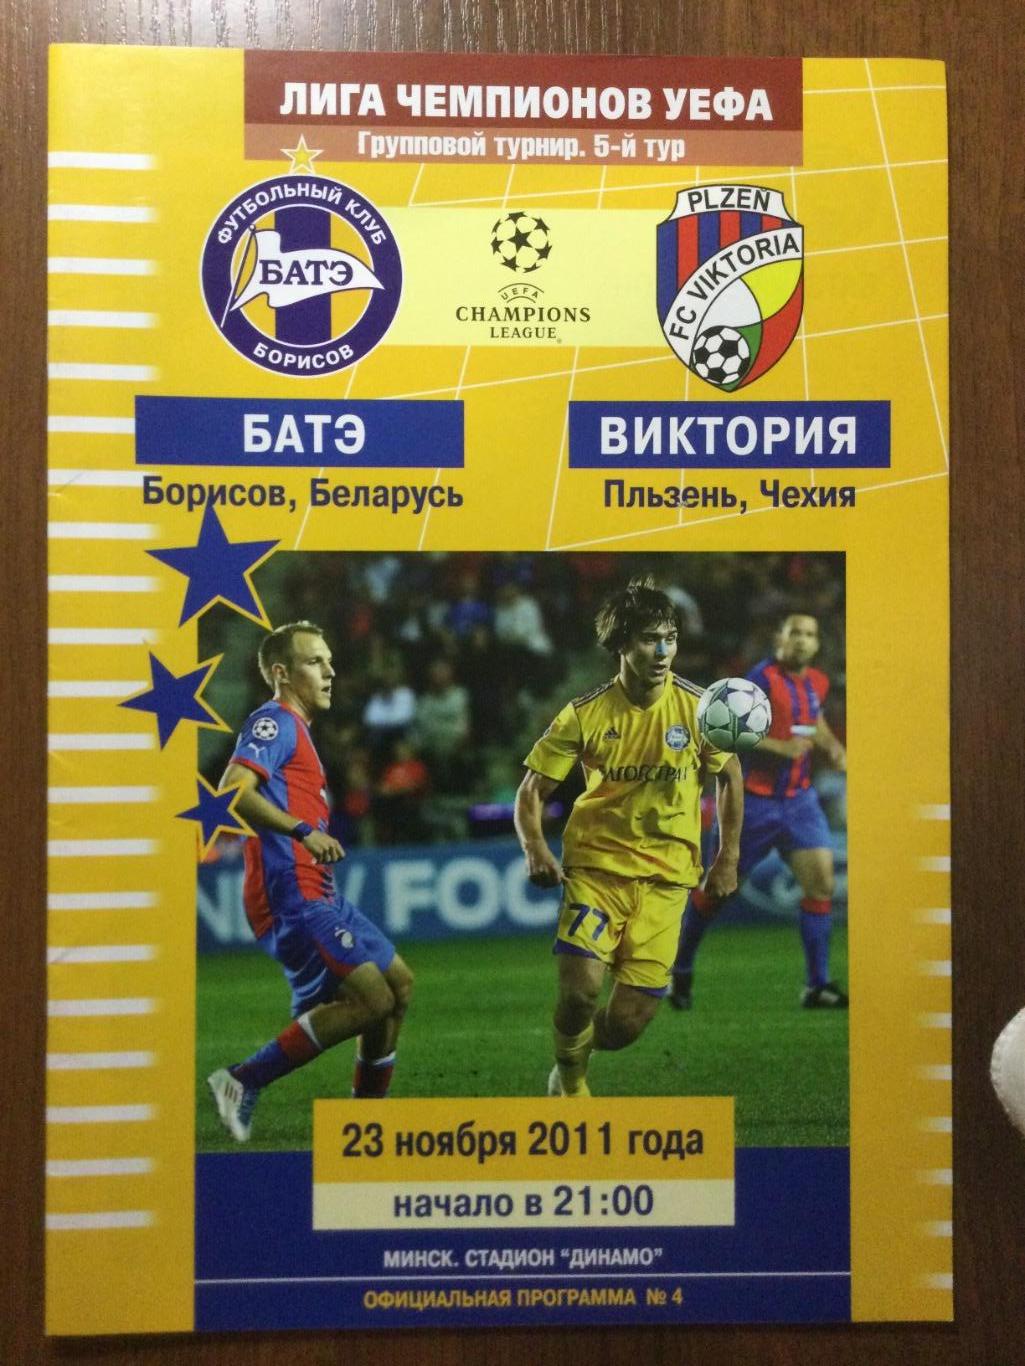 БАТЭ (Борисов, Беларусь) - Виктория (Пльзень, Чехия) - 2011 -Лига чемпионов УЕФА